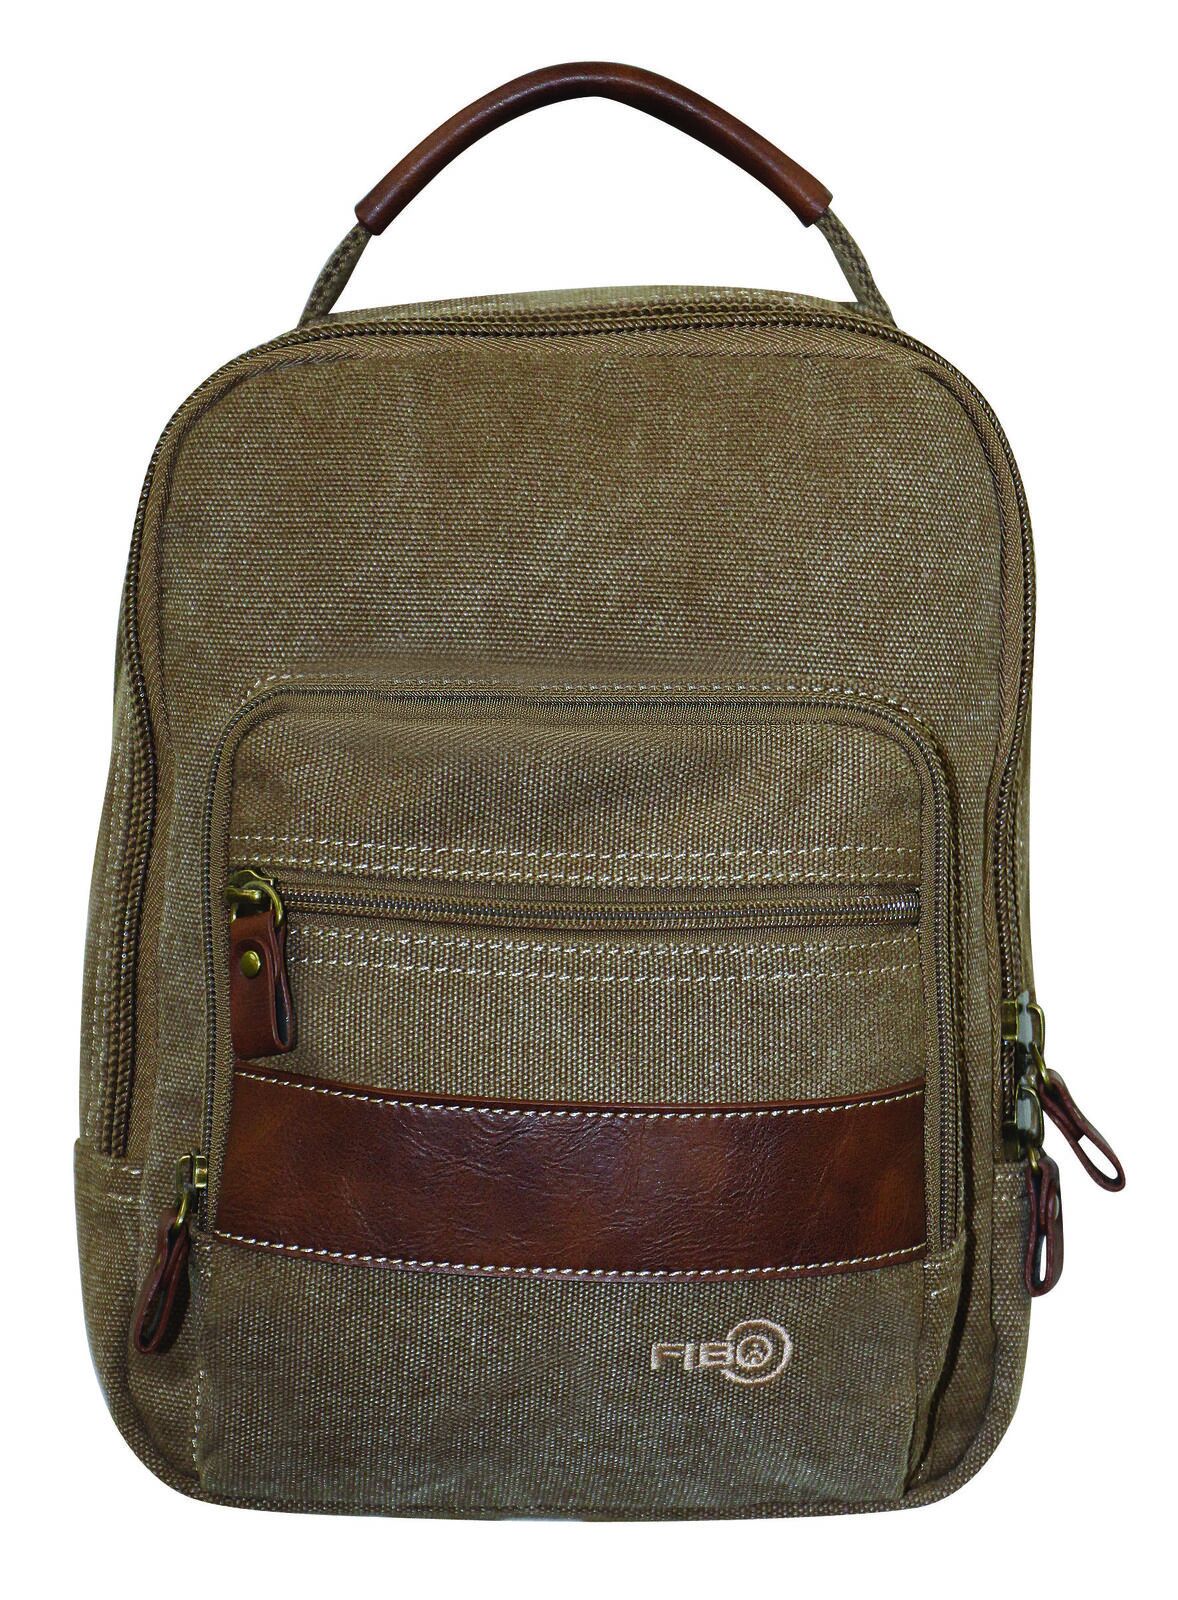 Canvas Sling Bag Shoulder Strap Messenger Travel Pack w Tablet Pocket - Khaki